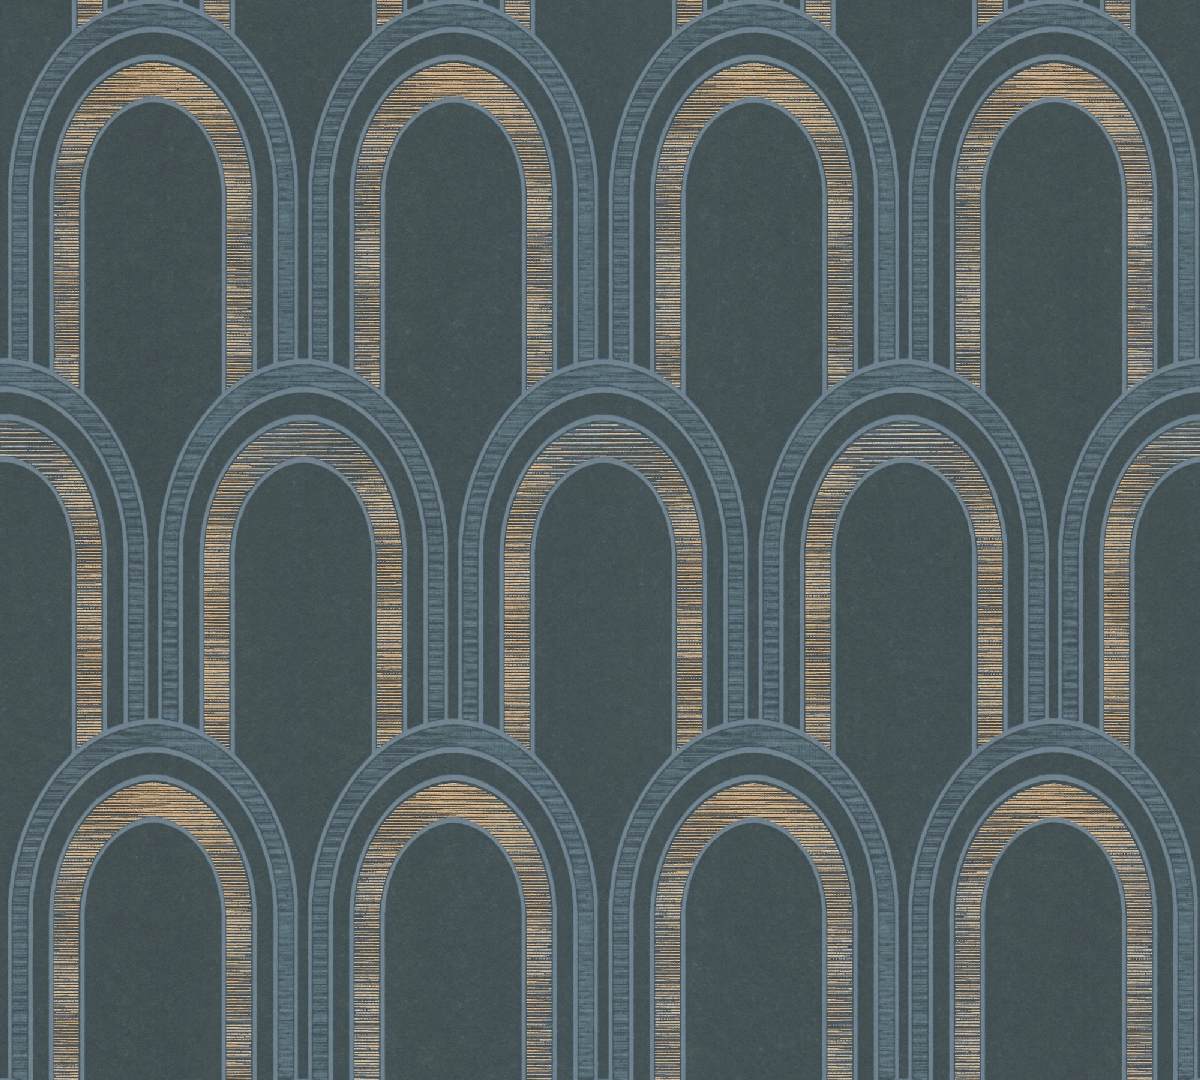 Vliestapete AP Arcade 391763 - Art Deco Muster - Petrol, Blau